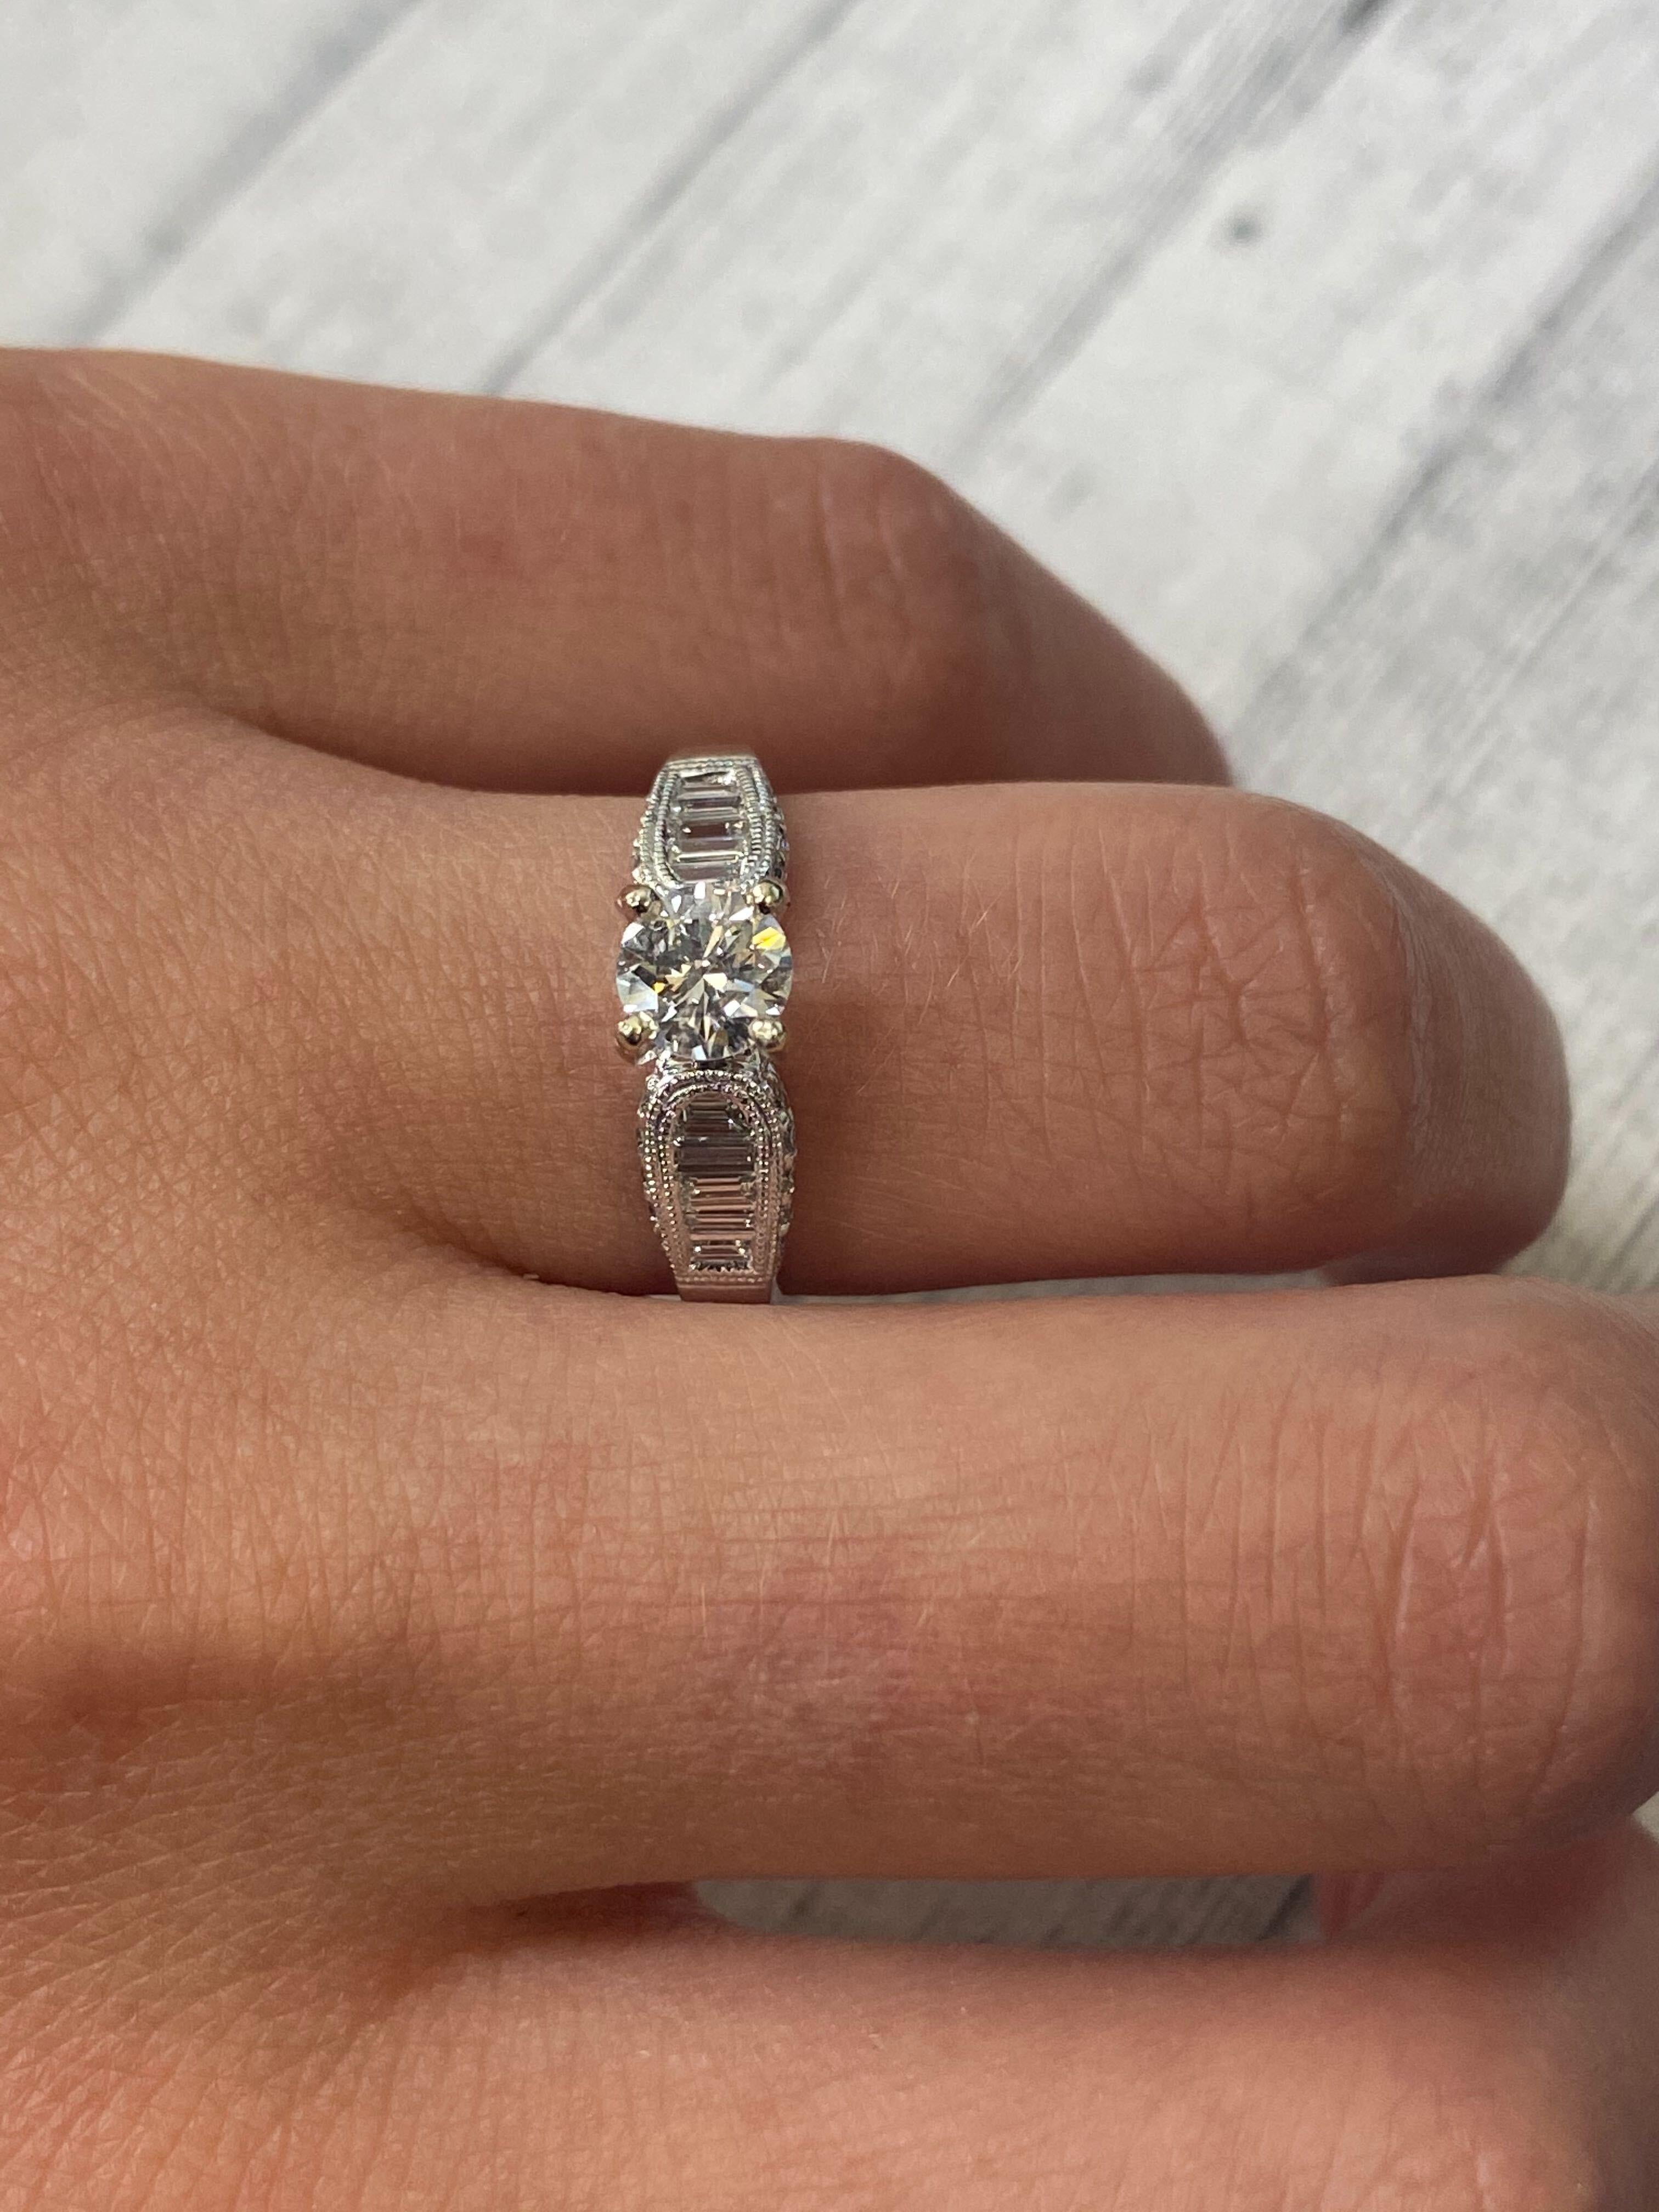 Rachel Koen Diamond Engagement Ring 18K White Gold 1.03Cttw For Sale 1